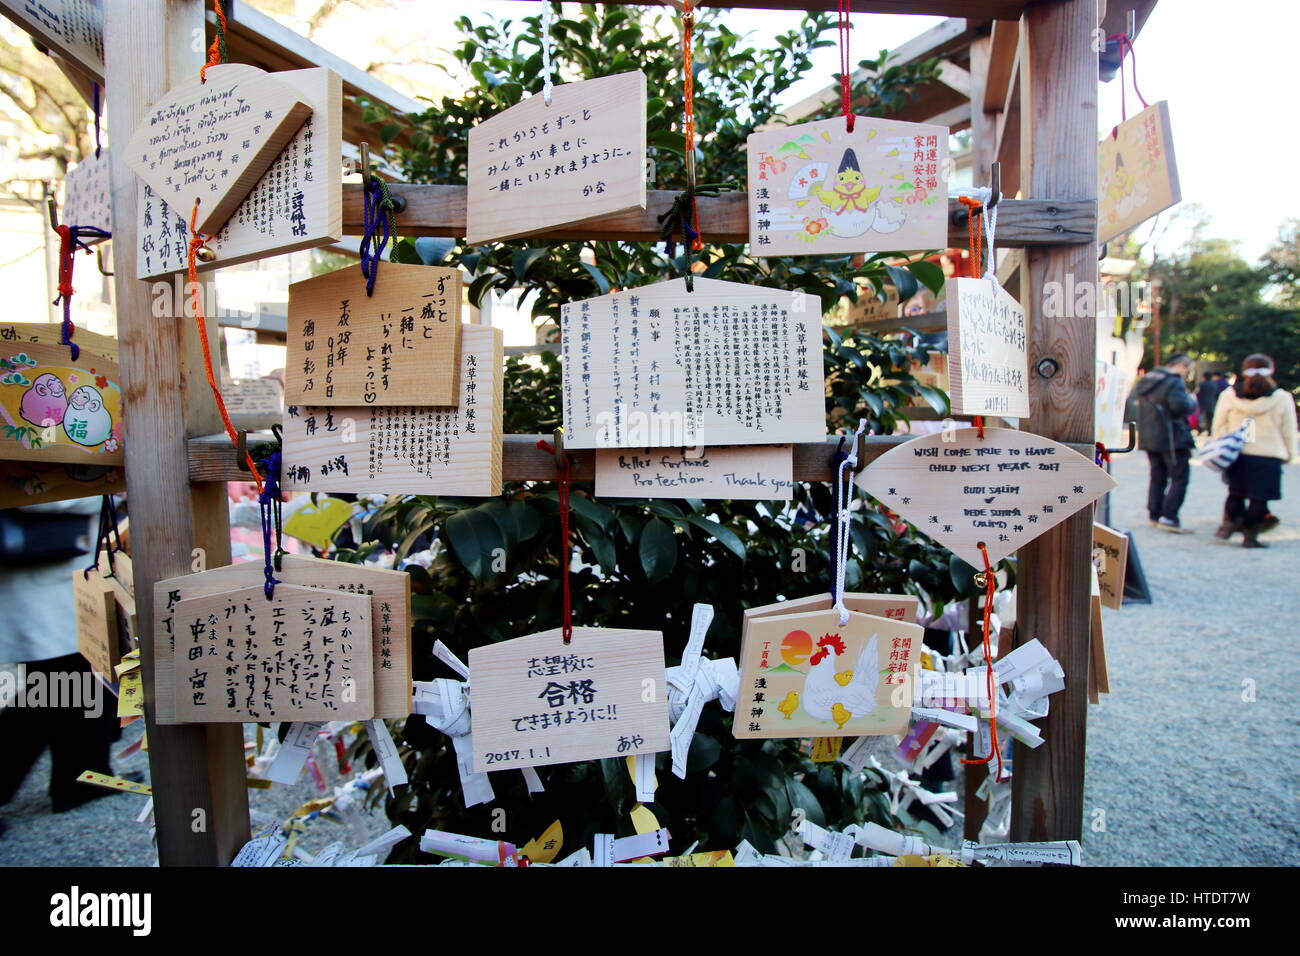 Die japanische auflegen Neujahr wünscht schriftliche auf dekorative Holzbalken in einem Tempel, traditionelle und kulturelle Weise feiern Neujahr in Japan Stockfoto